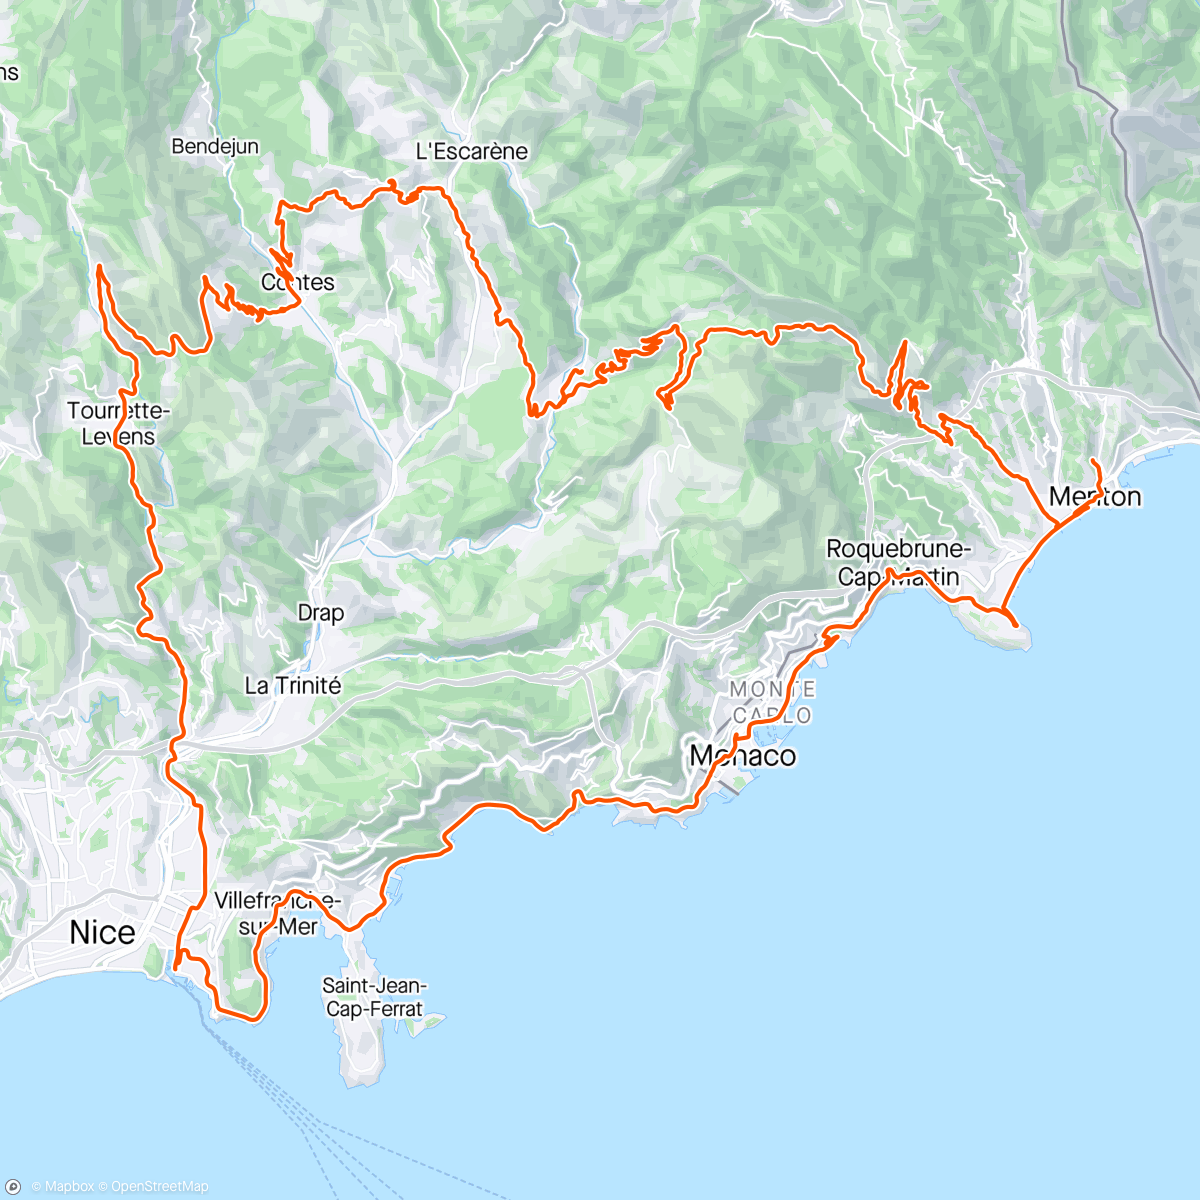 アクティビティ「Menton dag 3 - Col de Madone, Col de Chateauneauf, Nice og Monaco」の地図